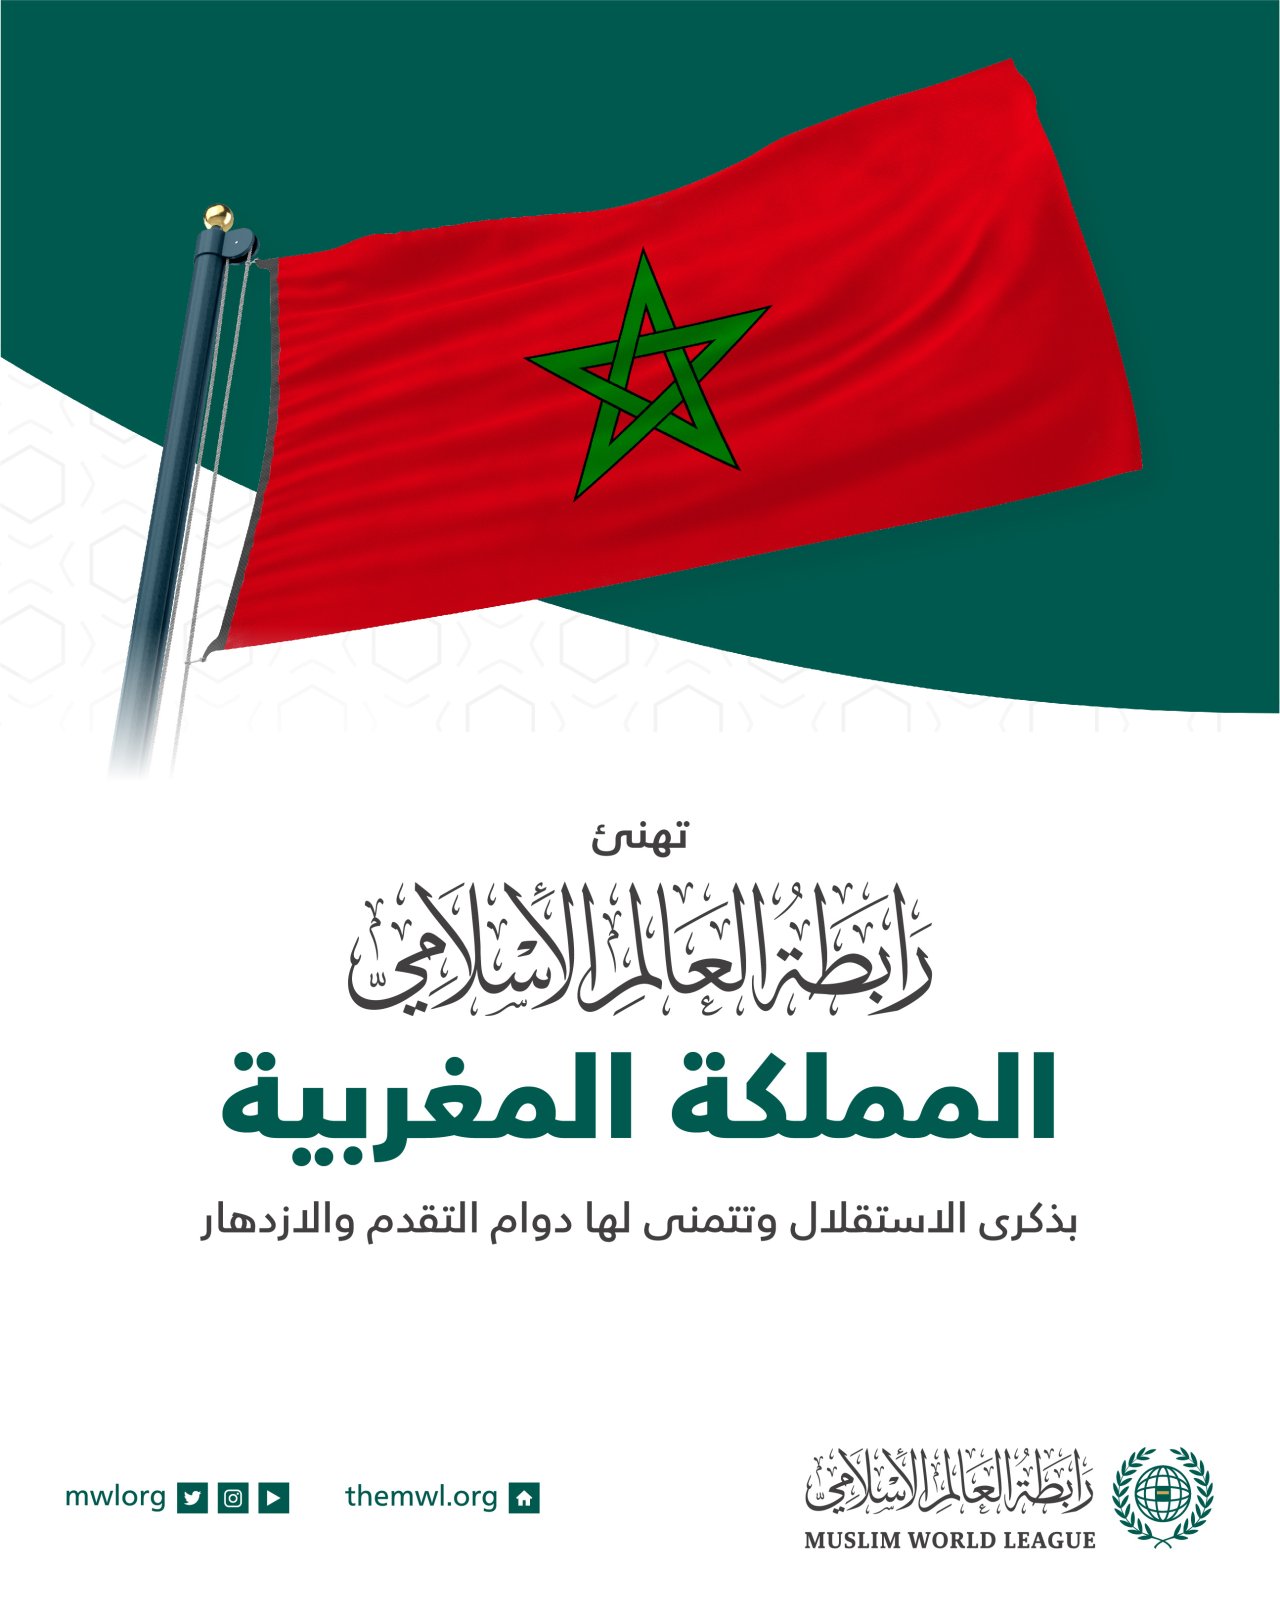 تهنئ رابطة العالم الإسلامي المملكة المغربية بذكرى الاستقلال :